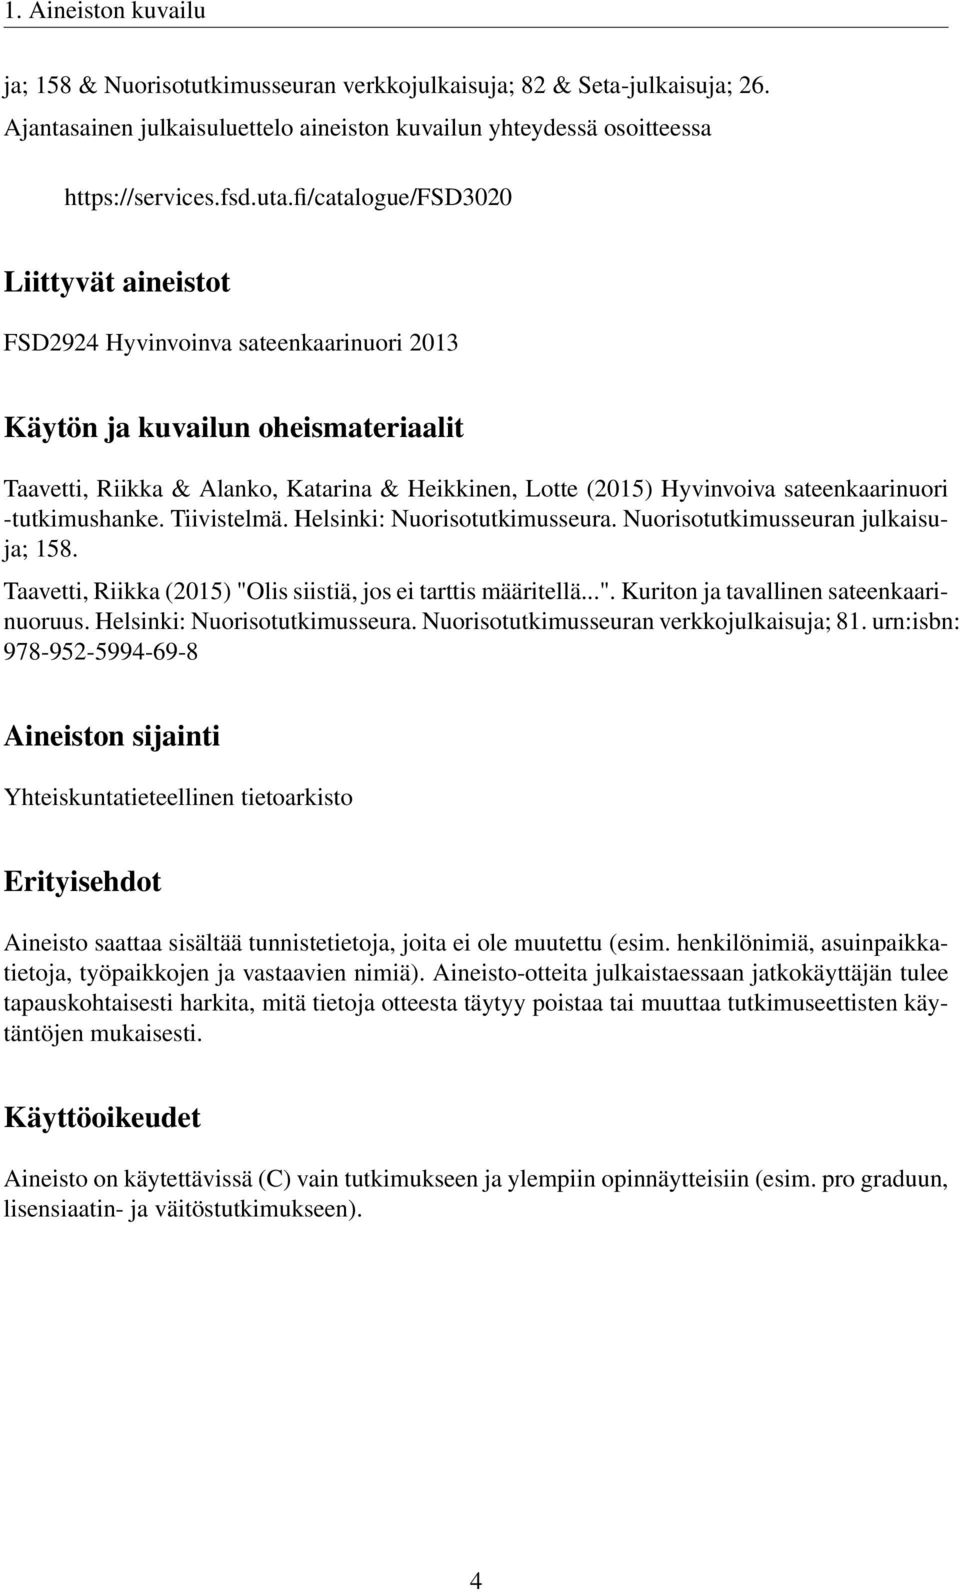 sateenkaarinuori -tutkimushanke. Tiivistelmä. Helsinki: Nuorisotutkimusseura. Nuorisotutkimusseuran julkaisuja; 158. Taavetti, Riikka (2015) "Olis siistiä, jos ei tarttis määritellä...". Kuriton ja tavallinen sateenkaarinuoruus.